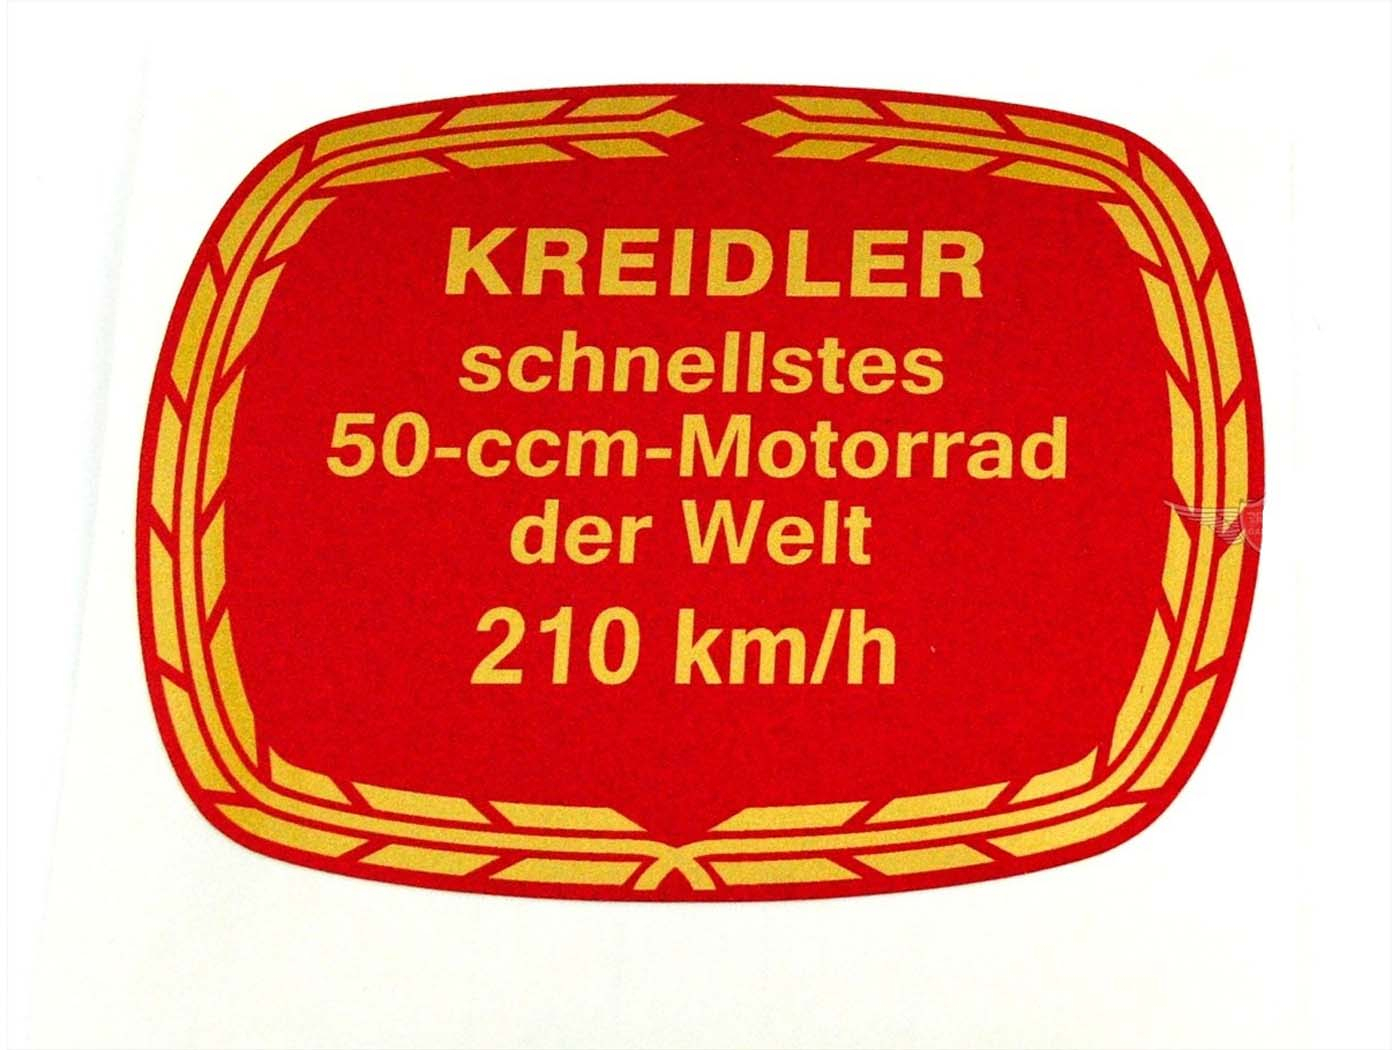 Tank Sticker 210 Km/h Record For Kreidler Florett Flory